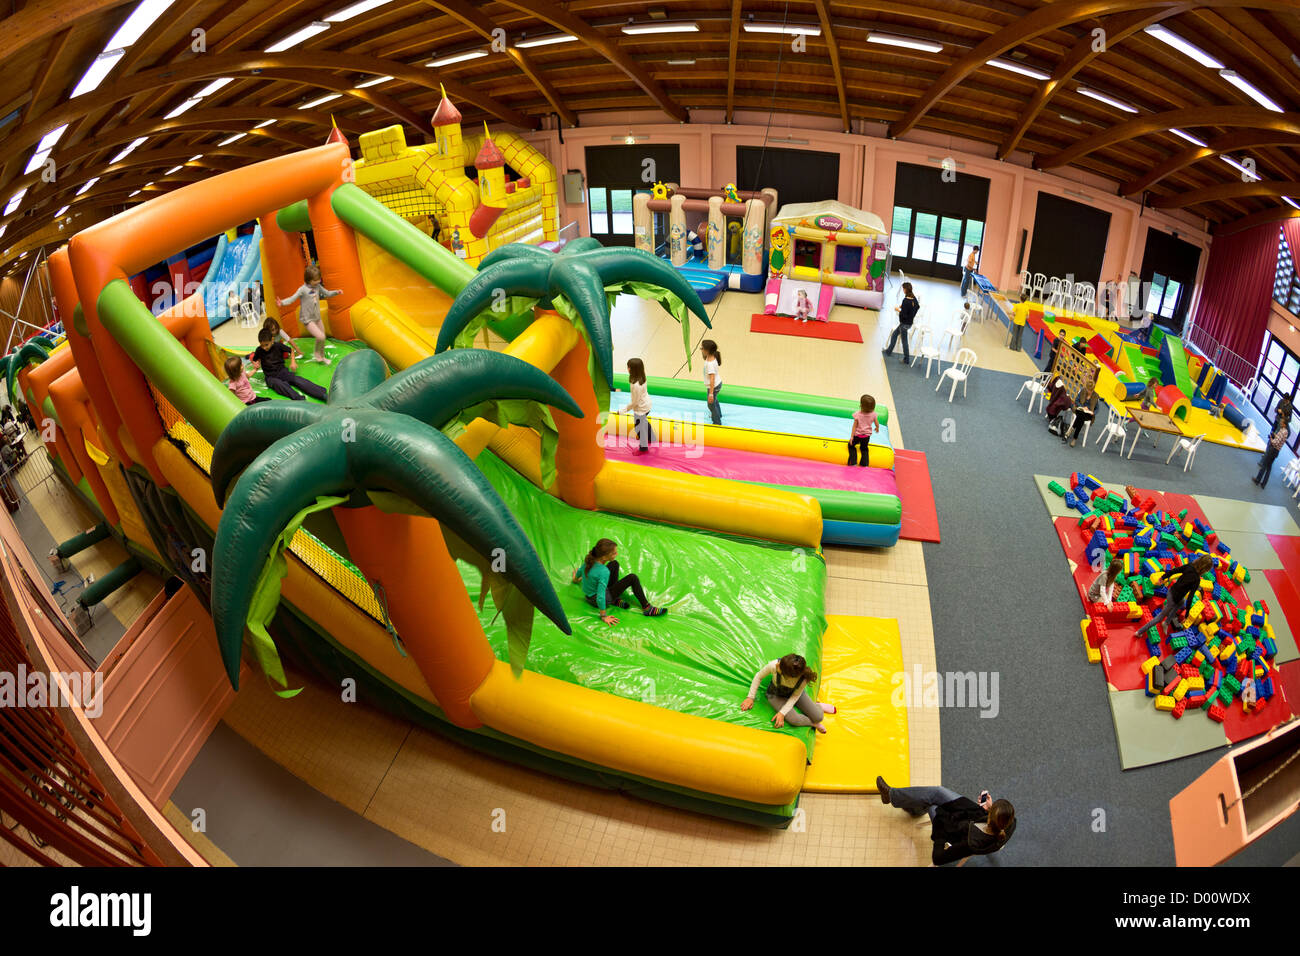 Structures gonflables (château gonflable type) pour les enfants dans une fête foraine. Banque D'Images